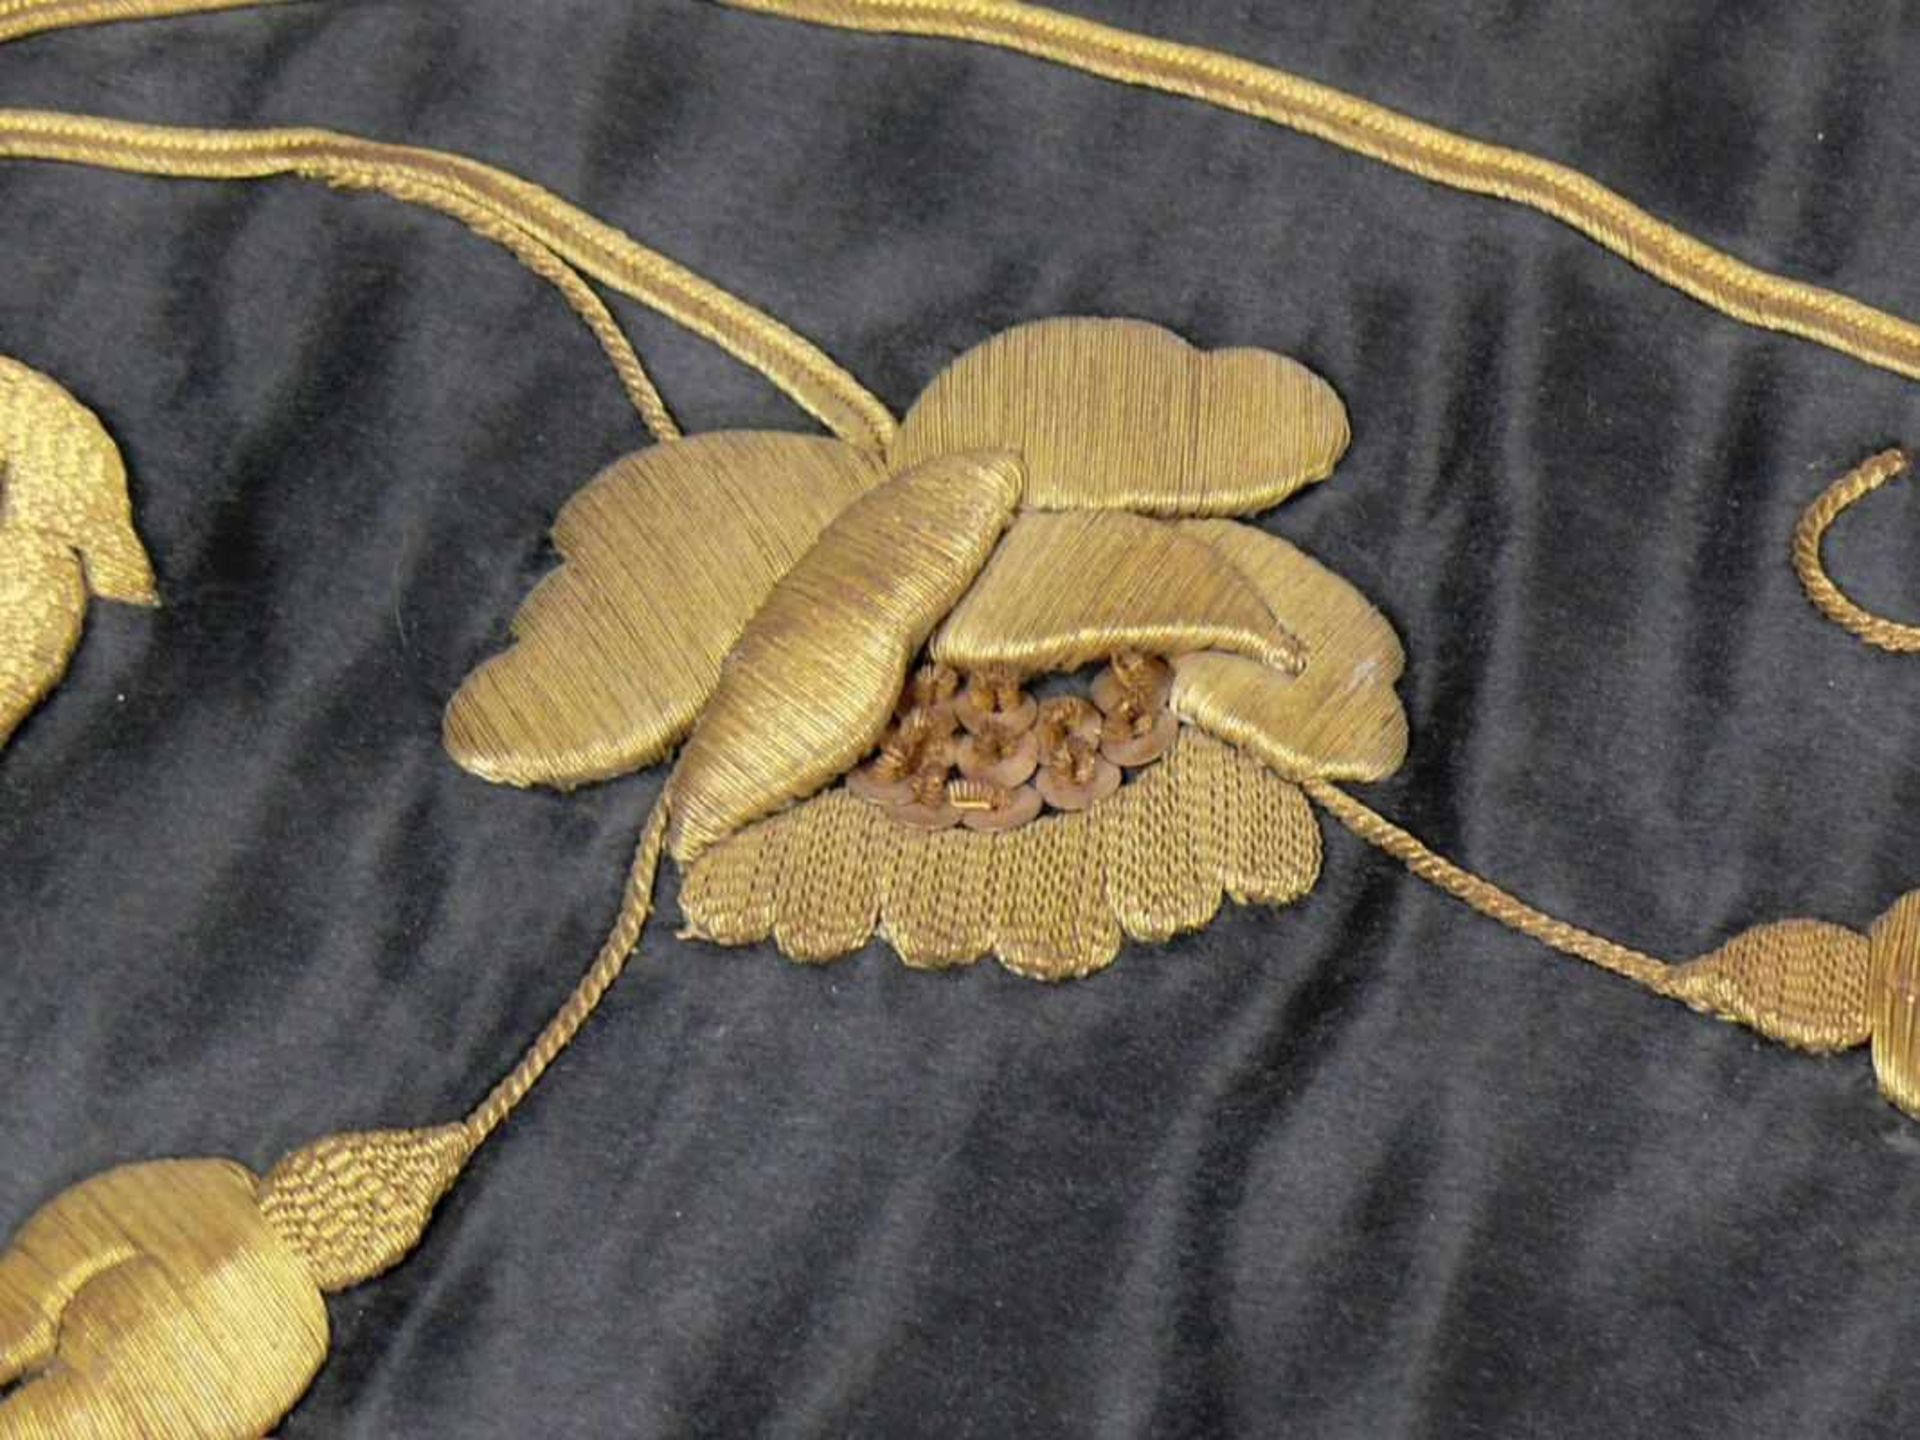 Tischläufer (19.Jh.) auf schwarzer Seide floraler, erhabener Dekor in Goldbrokat; gefasste - Bild 2 aus 3